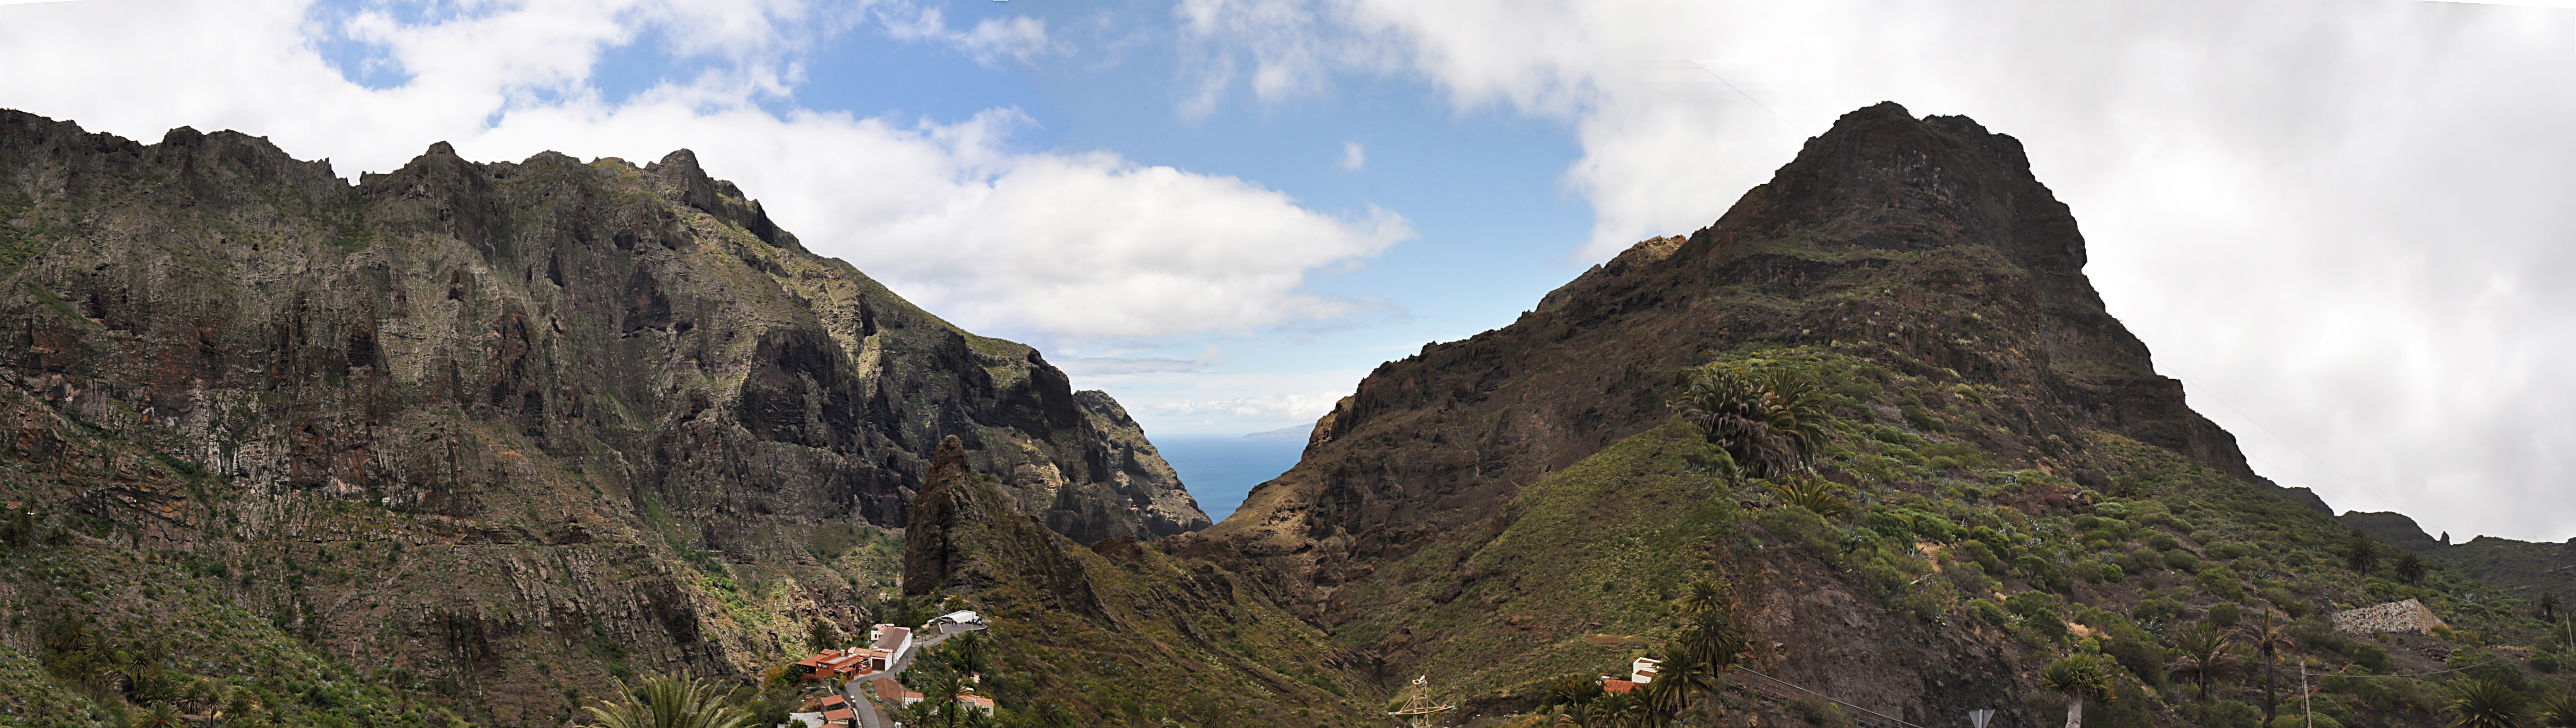 Foto: Formaciones rocosas - Masca (Santa Cruz de Tenerife), España